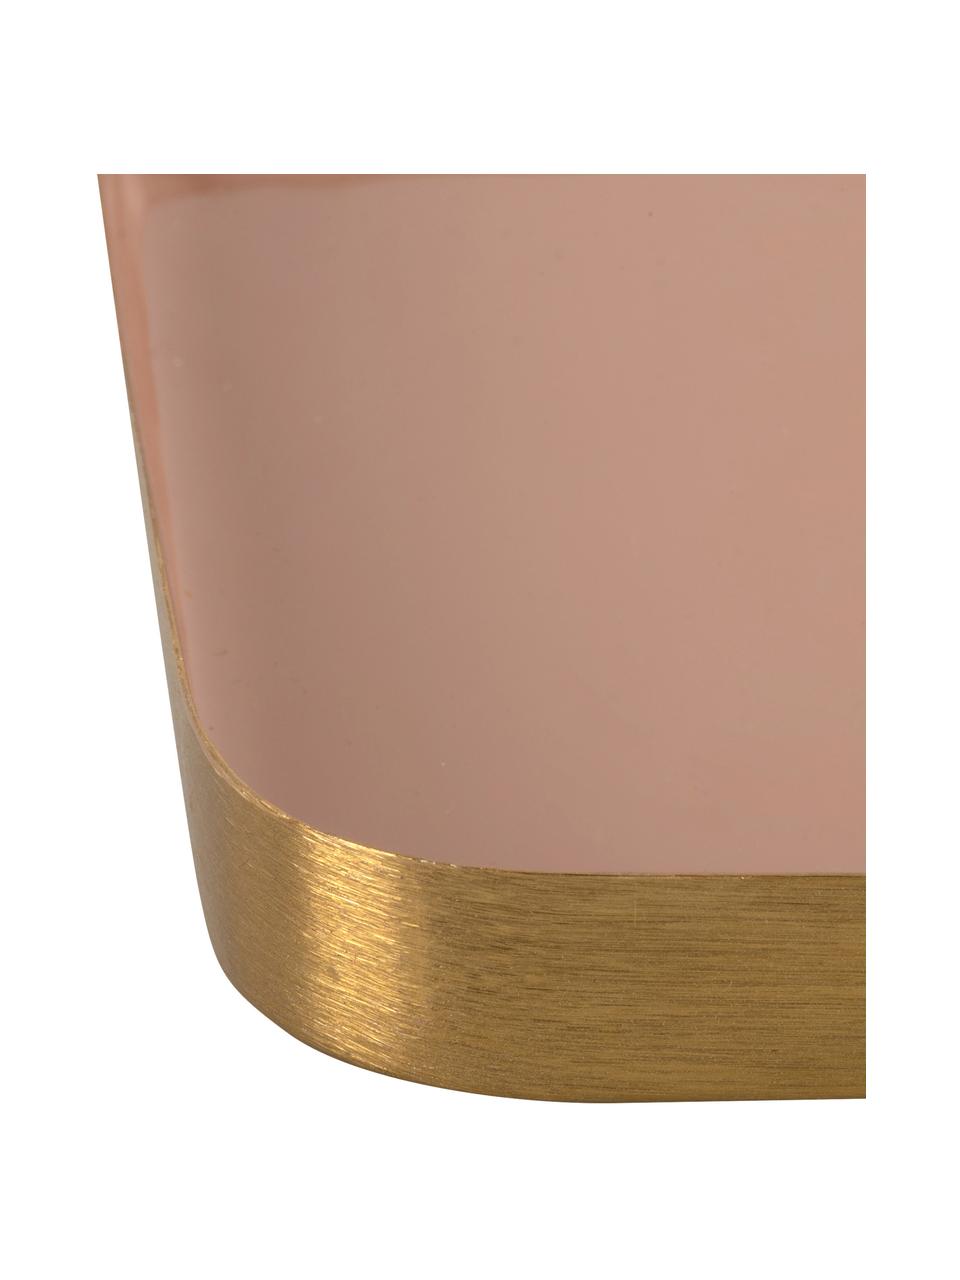 Decoratief dienblad Festive met glanzende oppervlak in roze, Gecoat metaal, Roze, goudkleurig, L 25 x B 13 cm